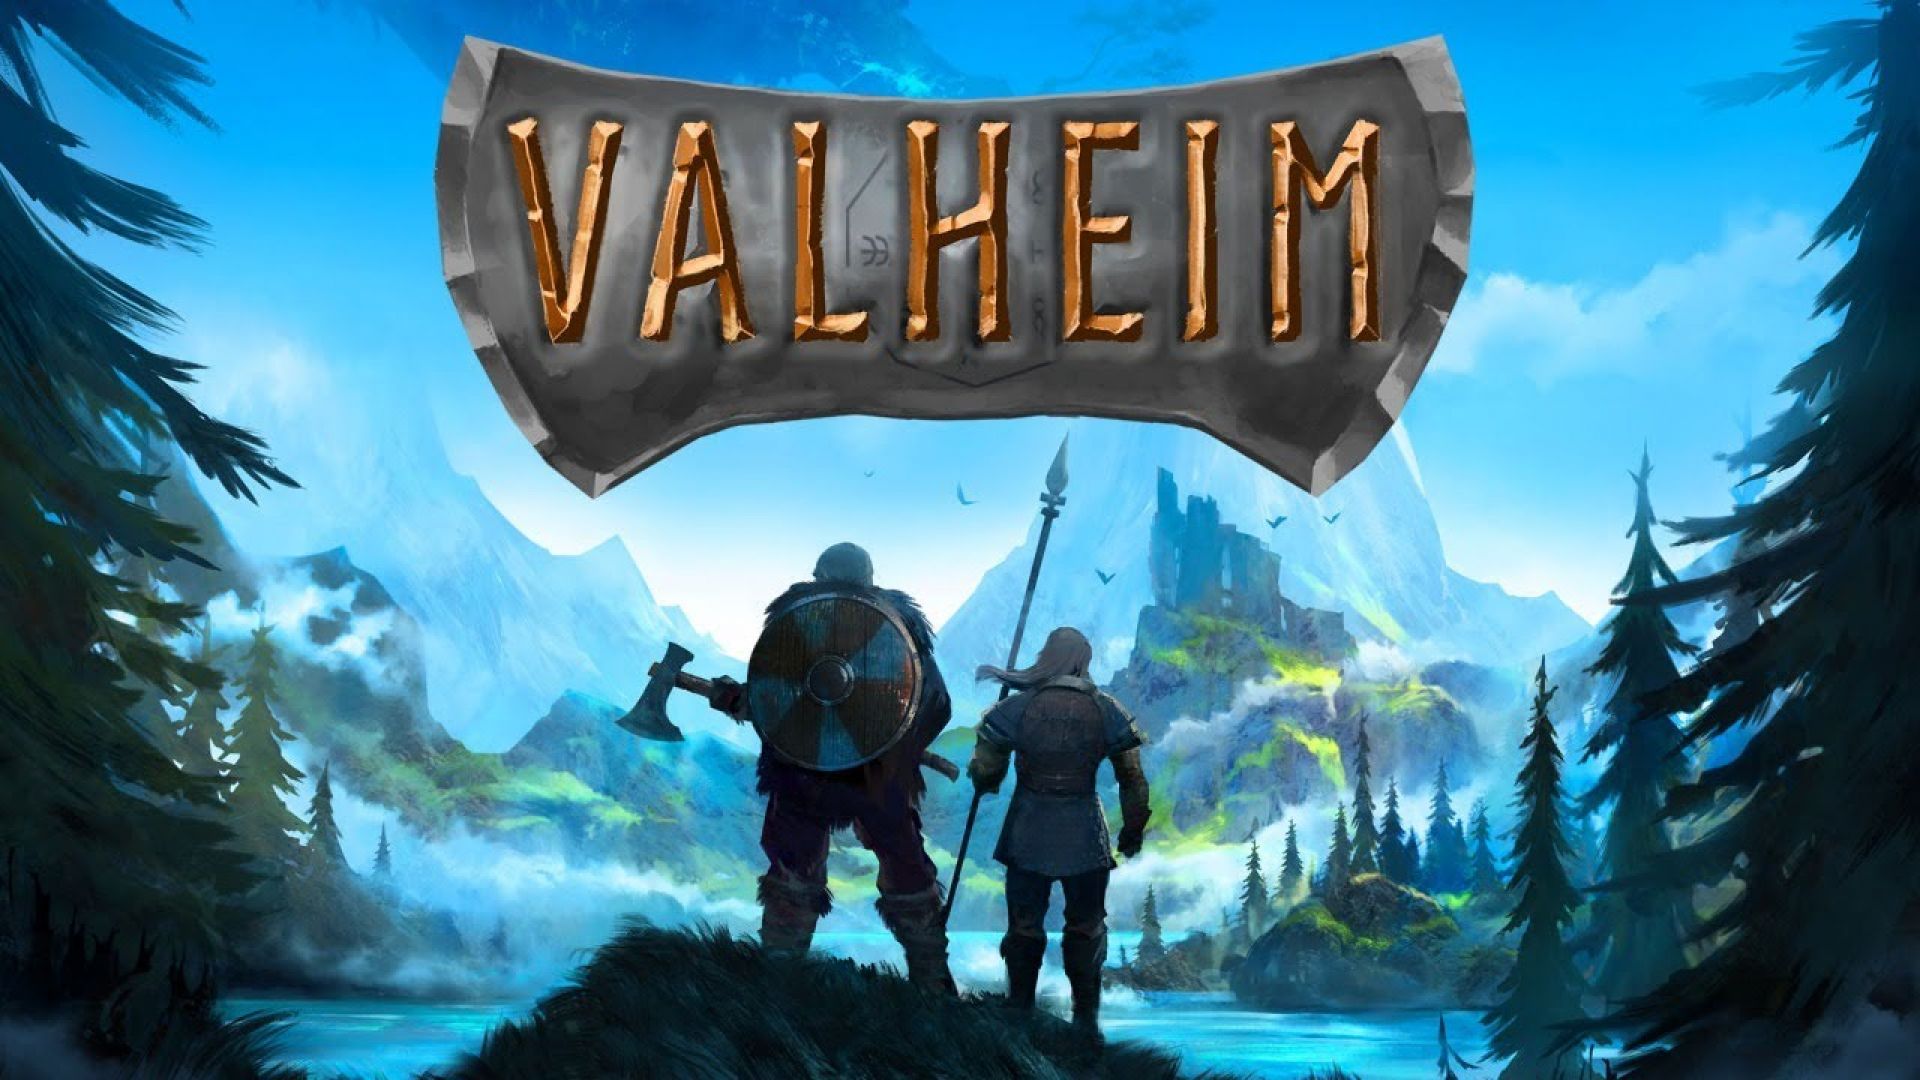 Valheim е продадена в 5 милиона копия още преди премиерата си